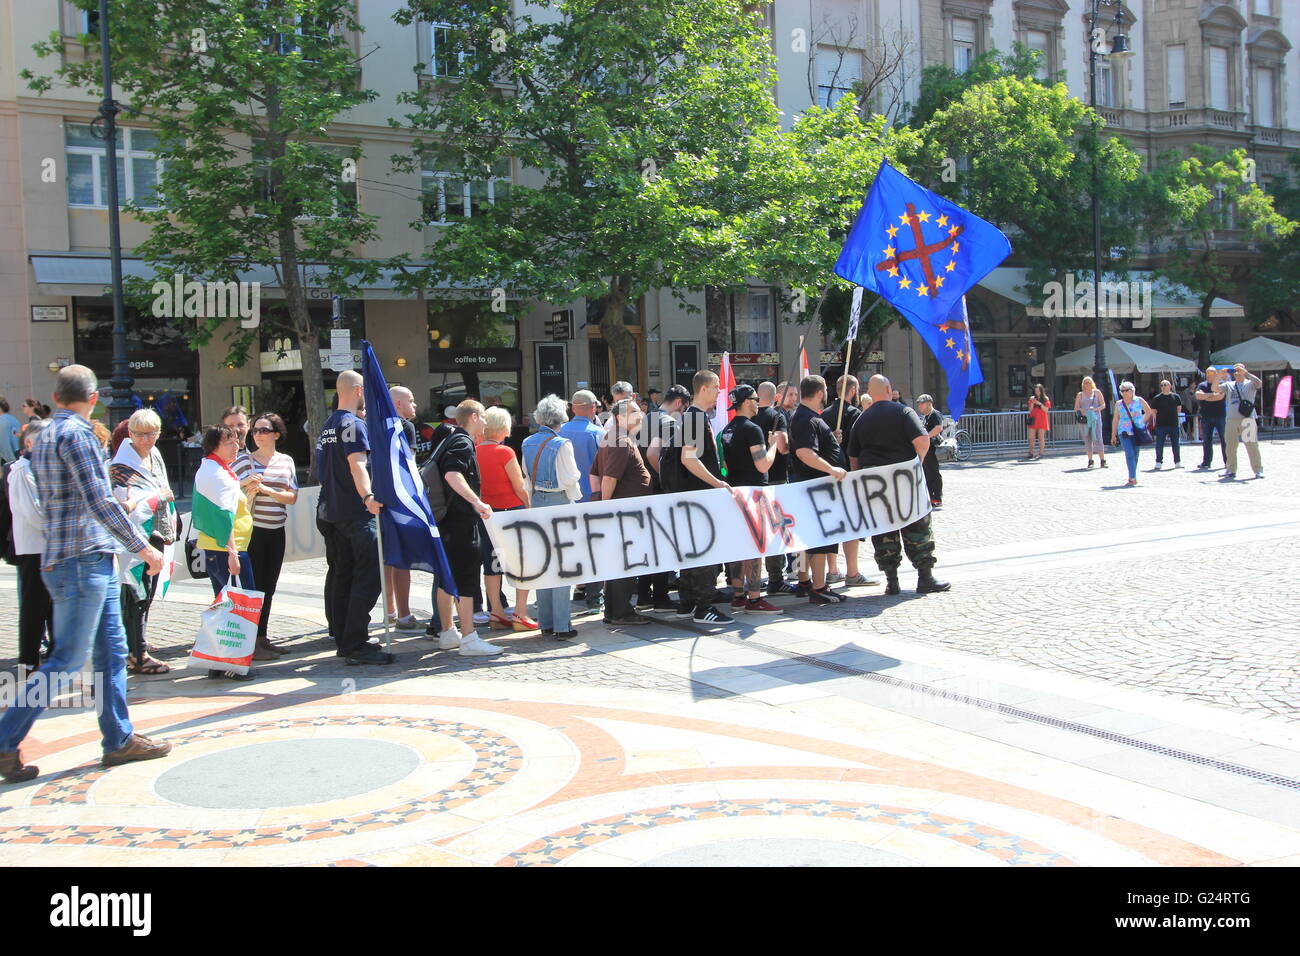 Eine rechtsextreme Bewegung, protestieren gegen Muslime und Europa, Budapest, Ungarn Stockfoto